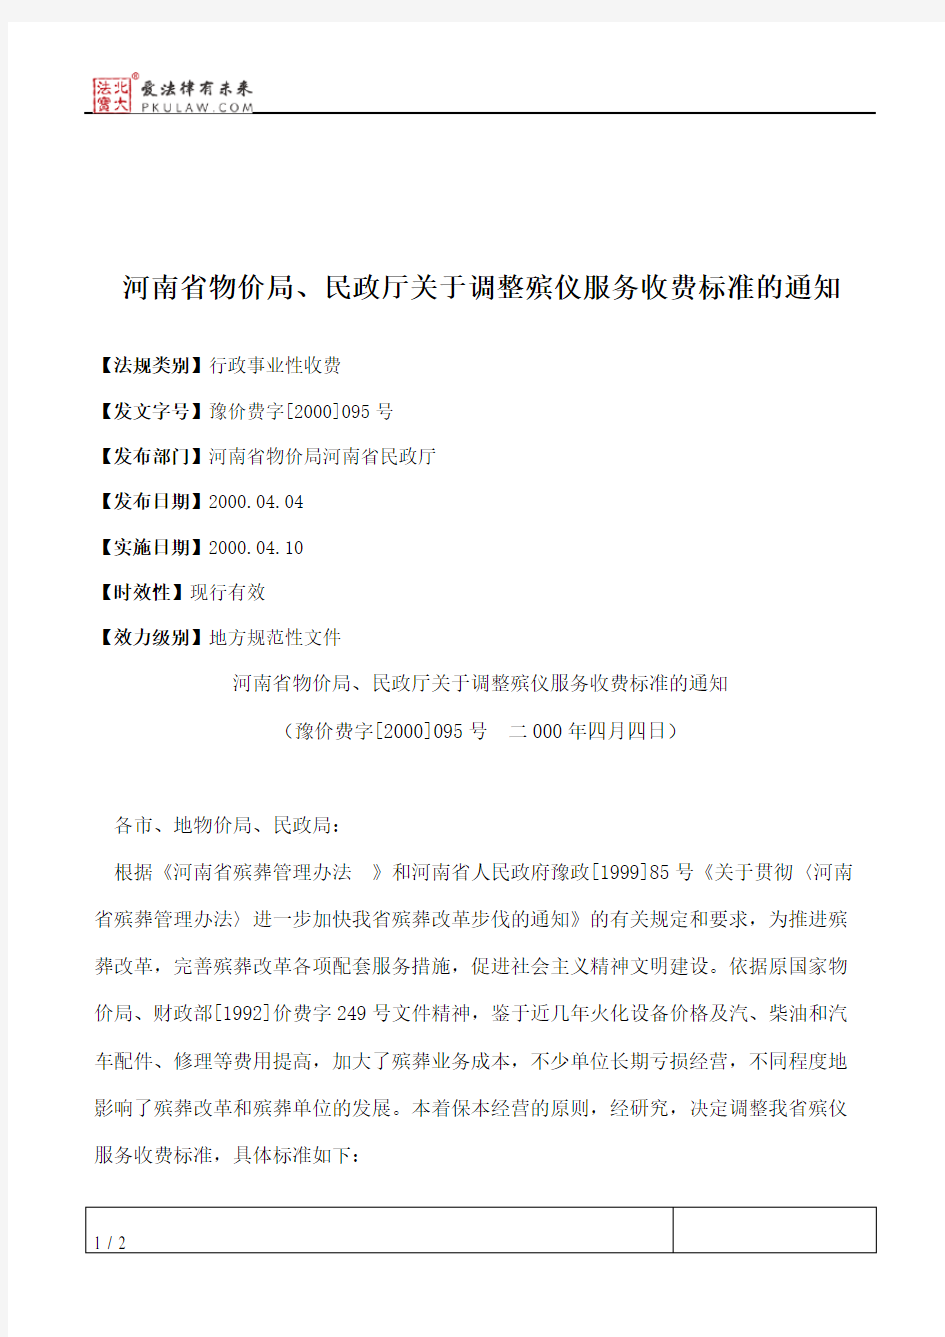 河南省物价局、民政厅关于调整殡仪服务收费标准的通知